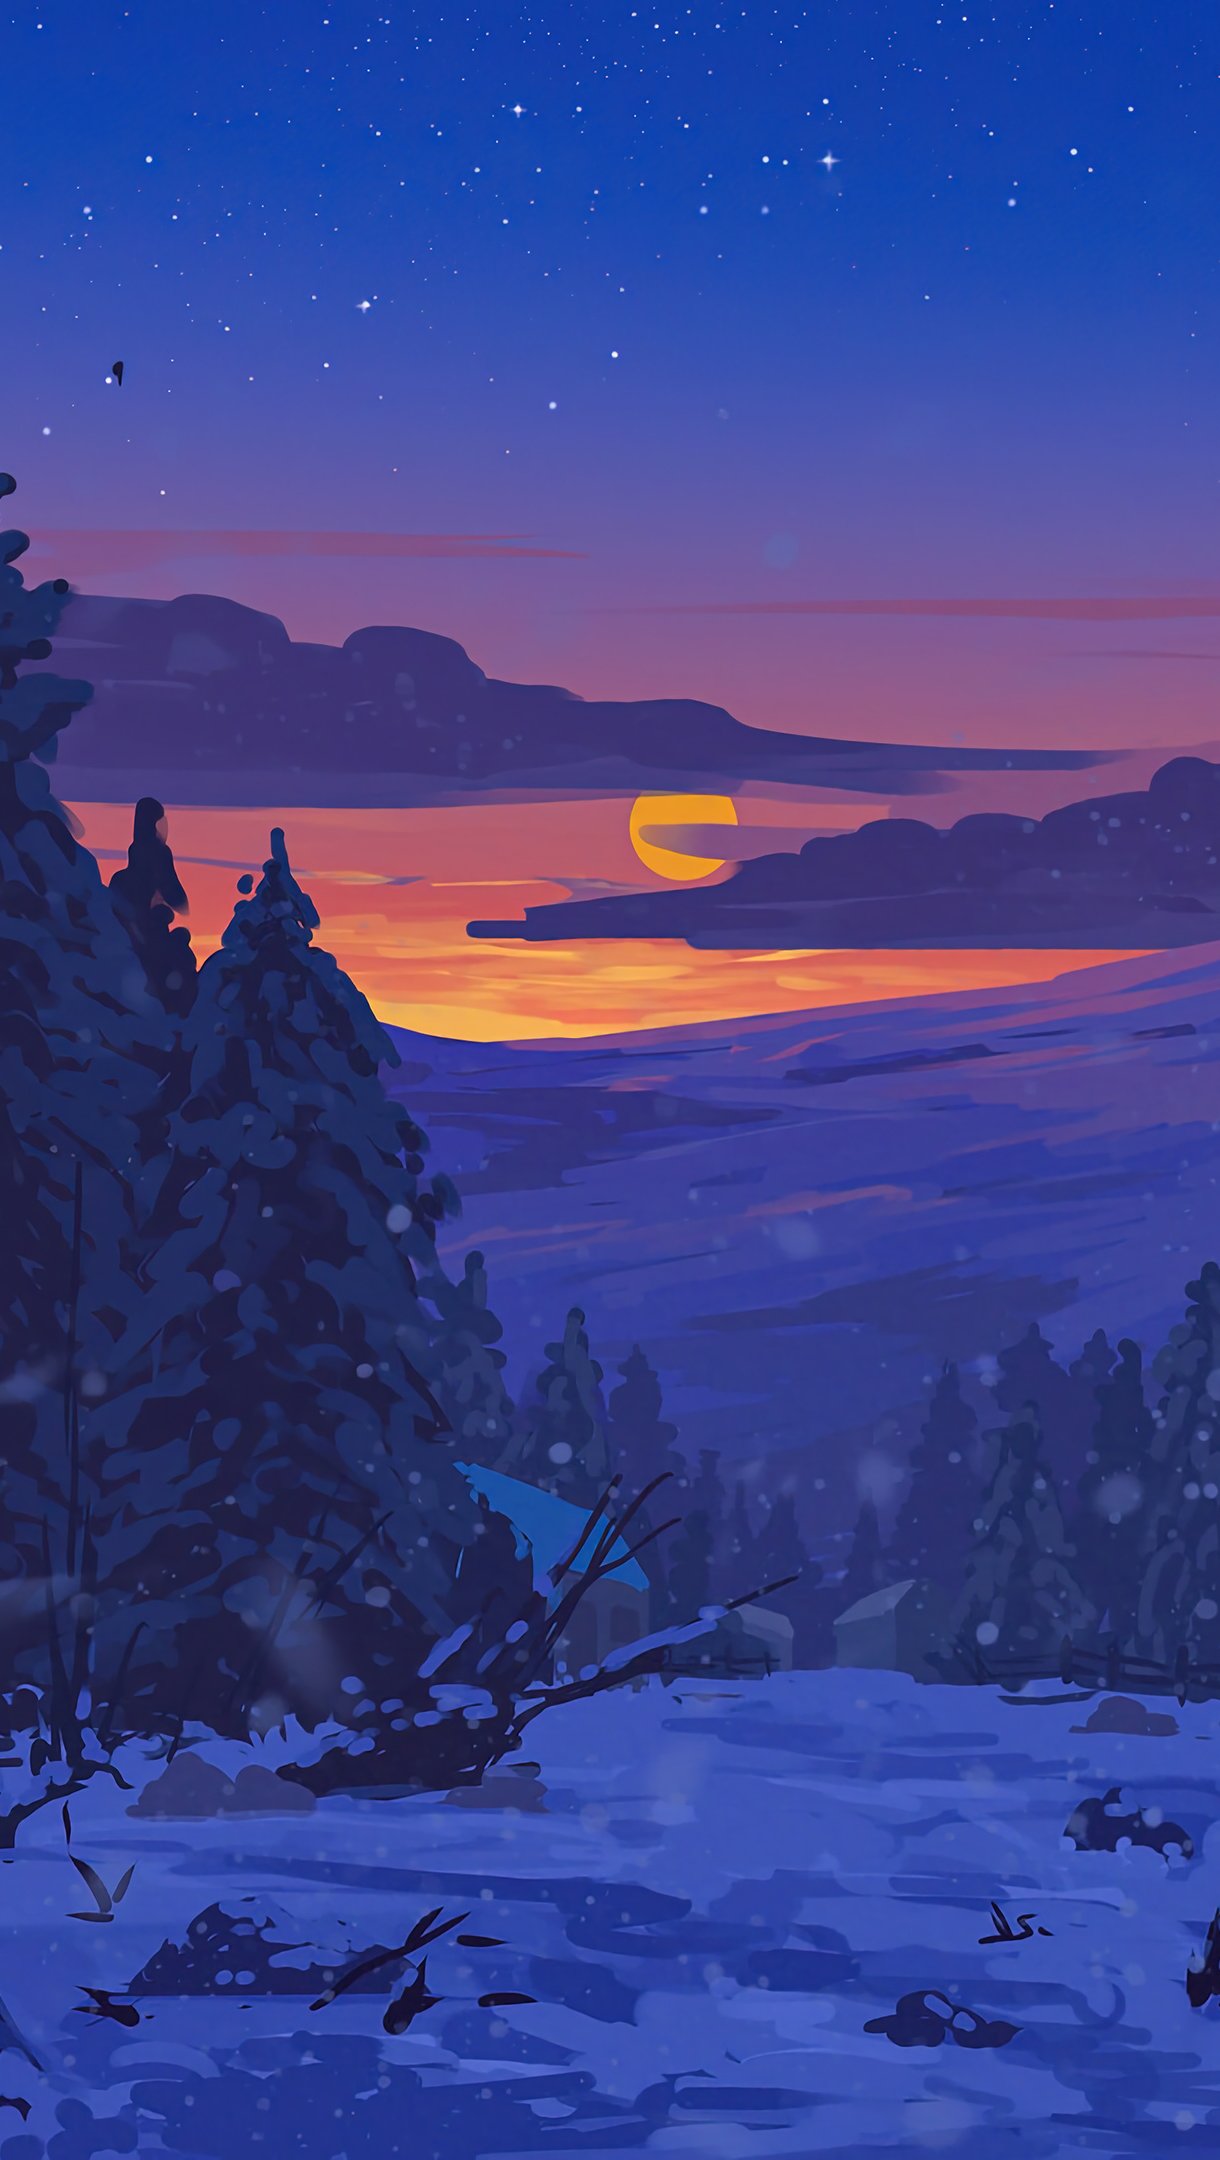 Sunset in snowy scenery Digital Art Wallpaper 4k Ultra HD